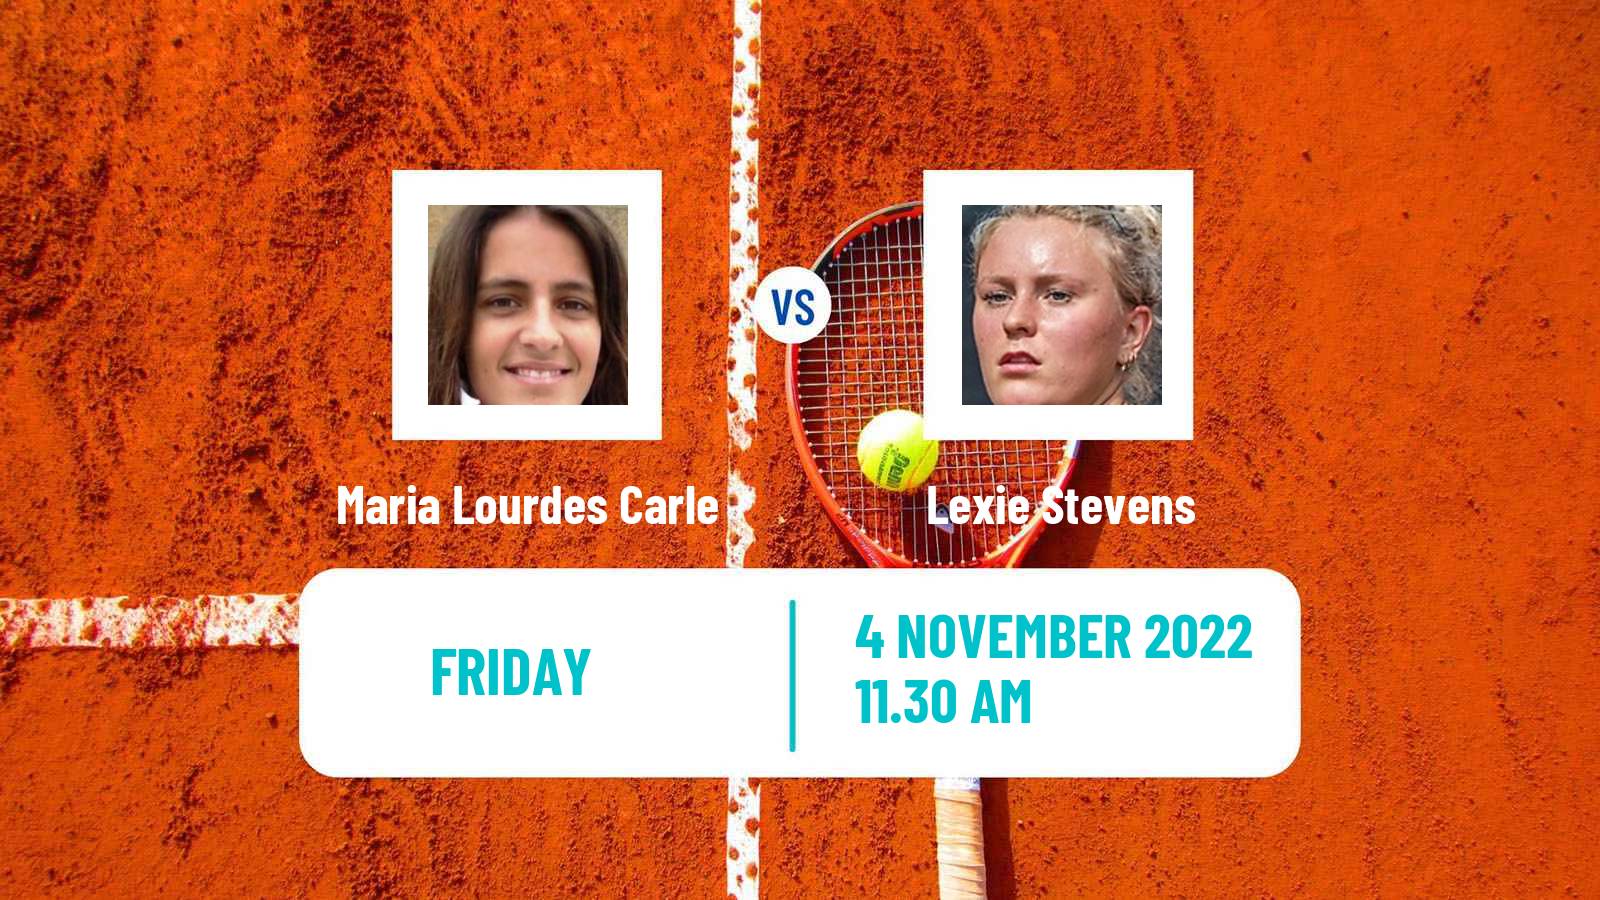 Tennis ITF Tournaments Maria Lourdes Carle - Lexie Stevens